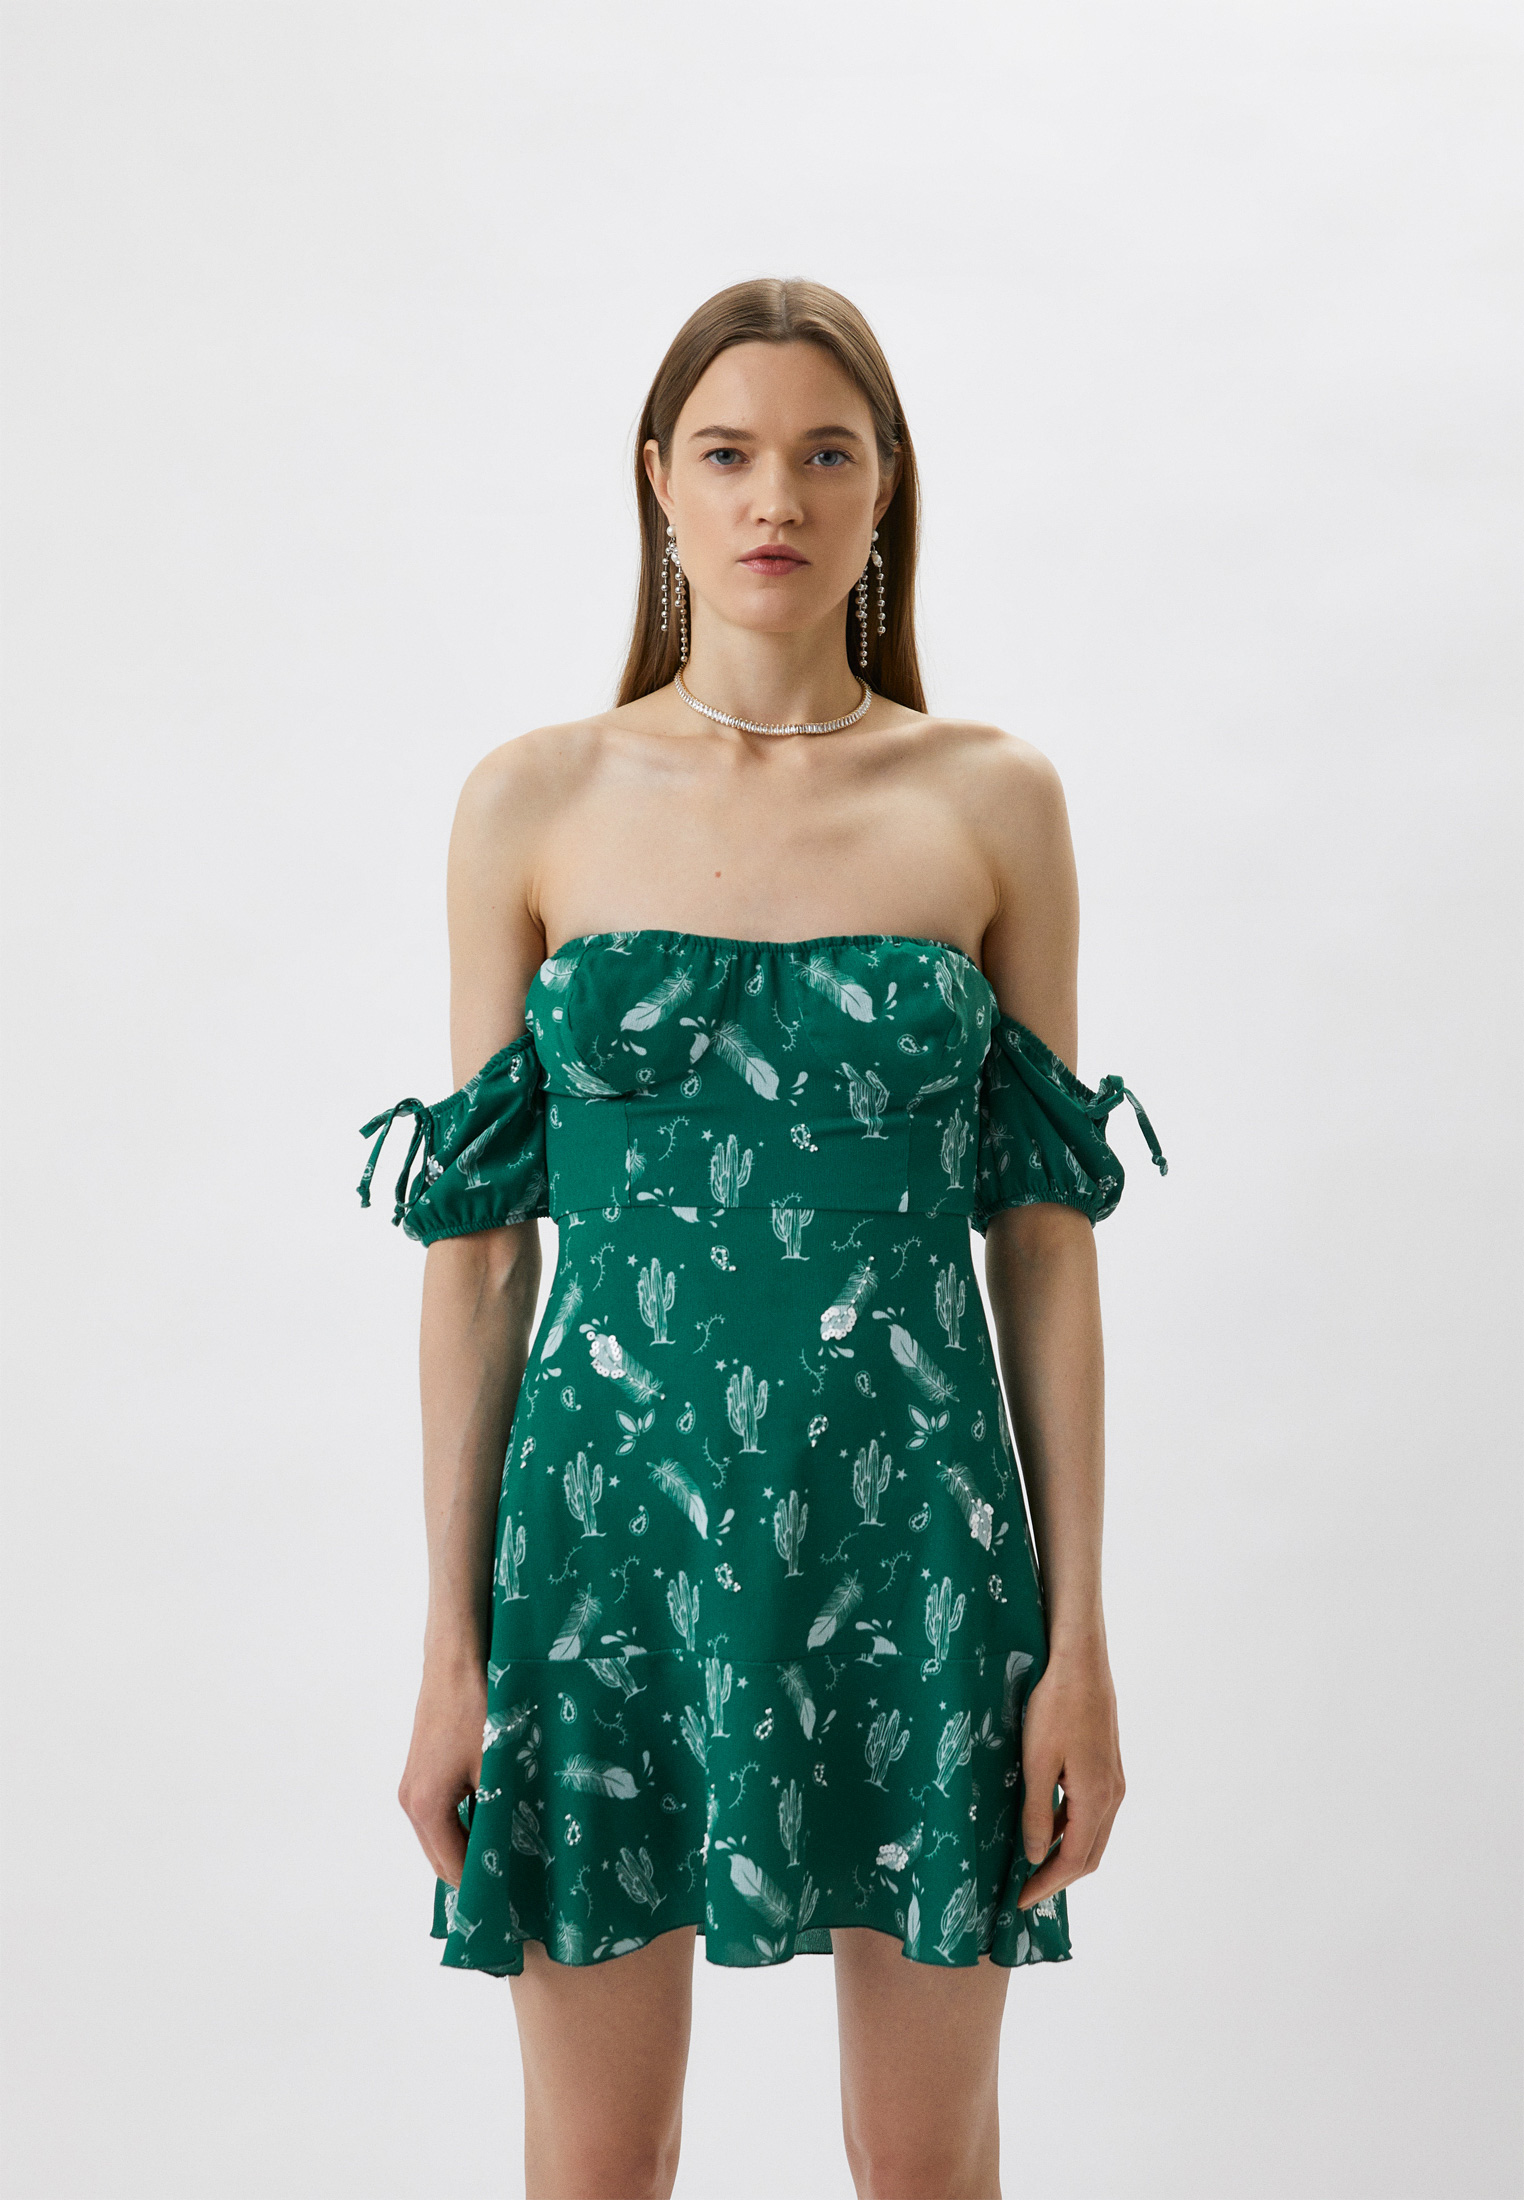 Купить Платье На Весну В Интернет Магазине